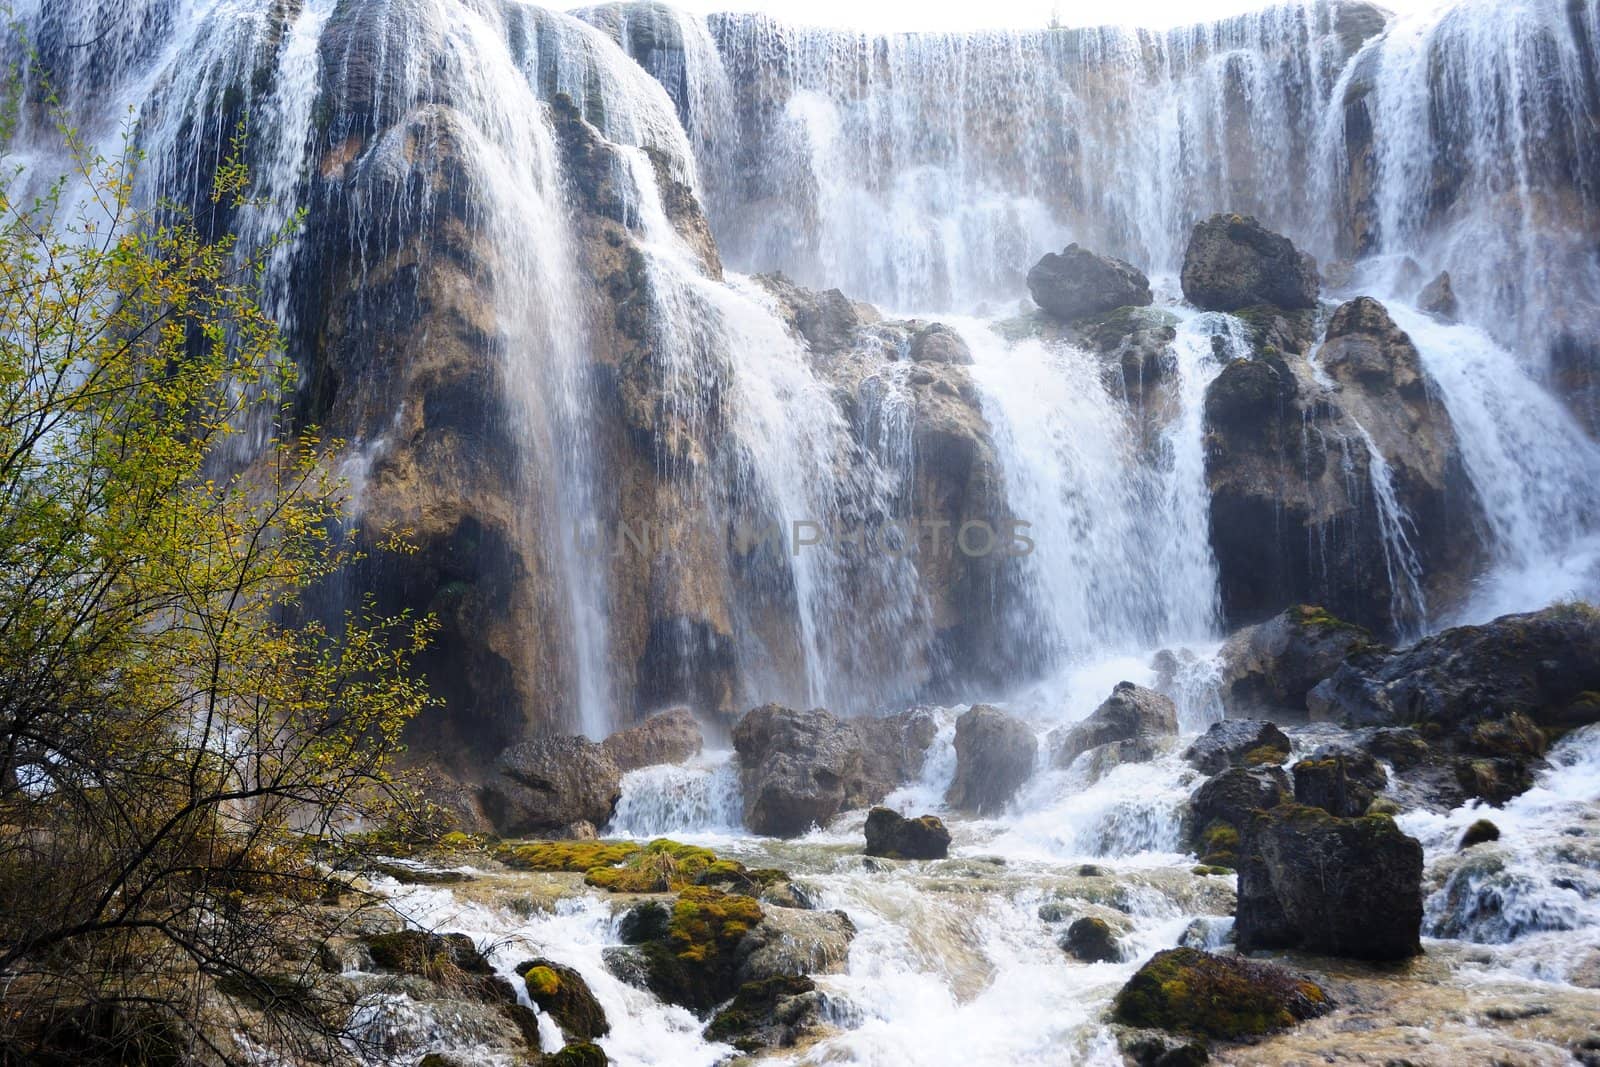 Waterfall in Jiuzhaigou, Sichuan province, China